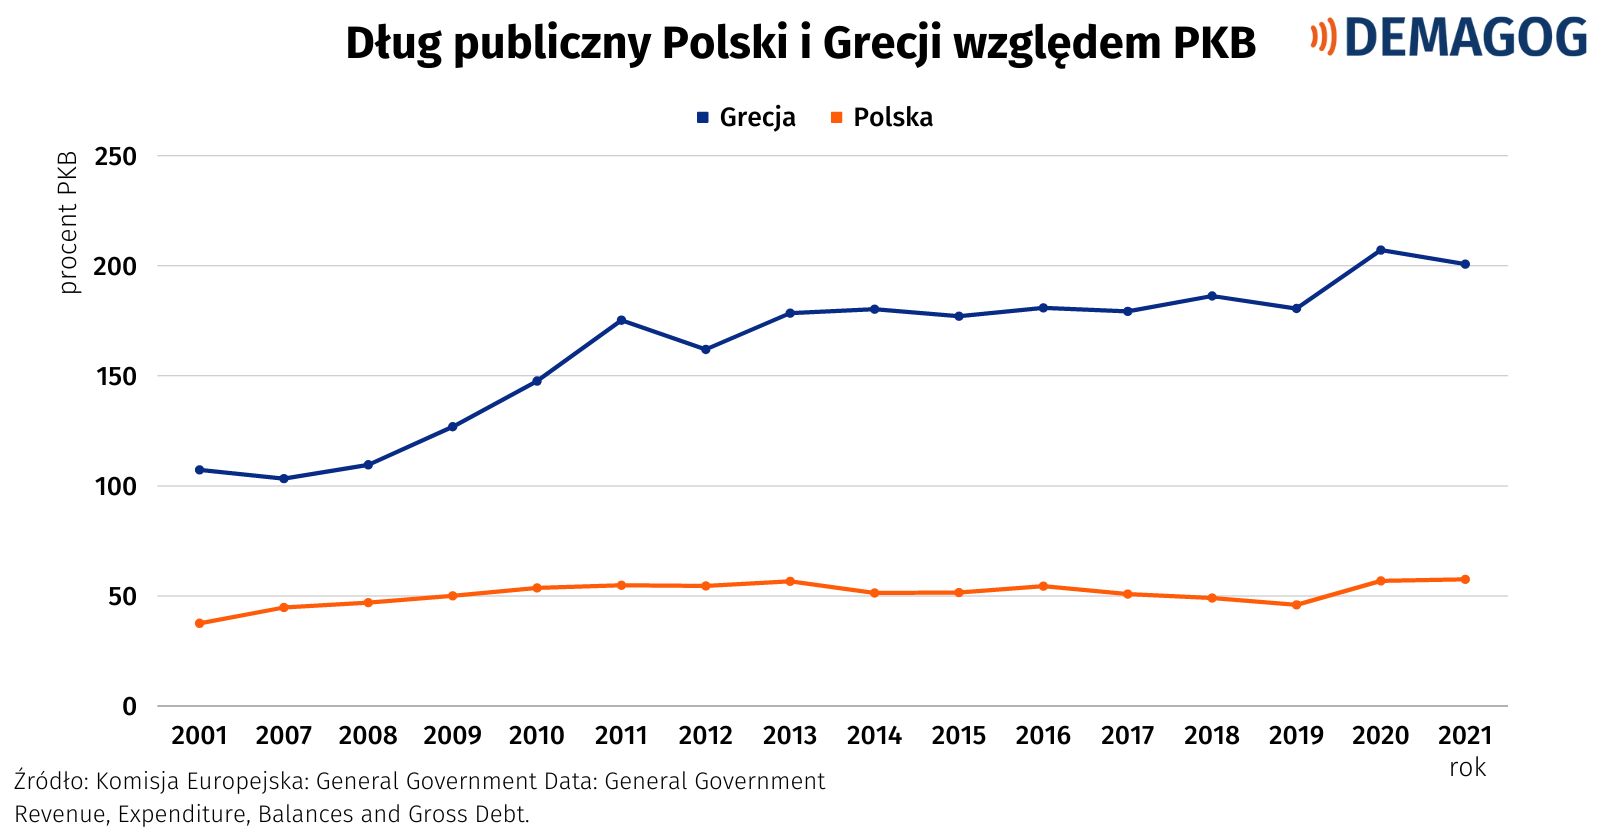 Wykres pokazujący wysokość długu publicznego Polski i Grecji względem PKB na podstawie danych Komisji Europejskiej.